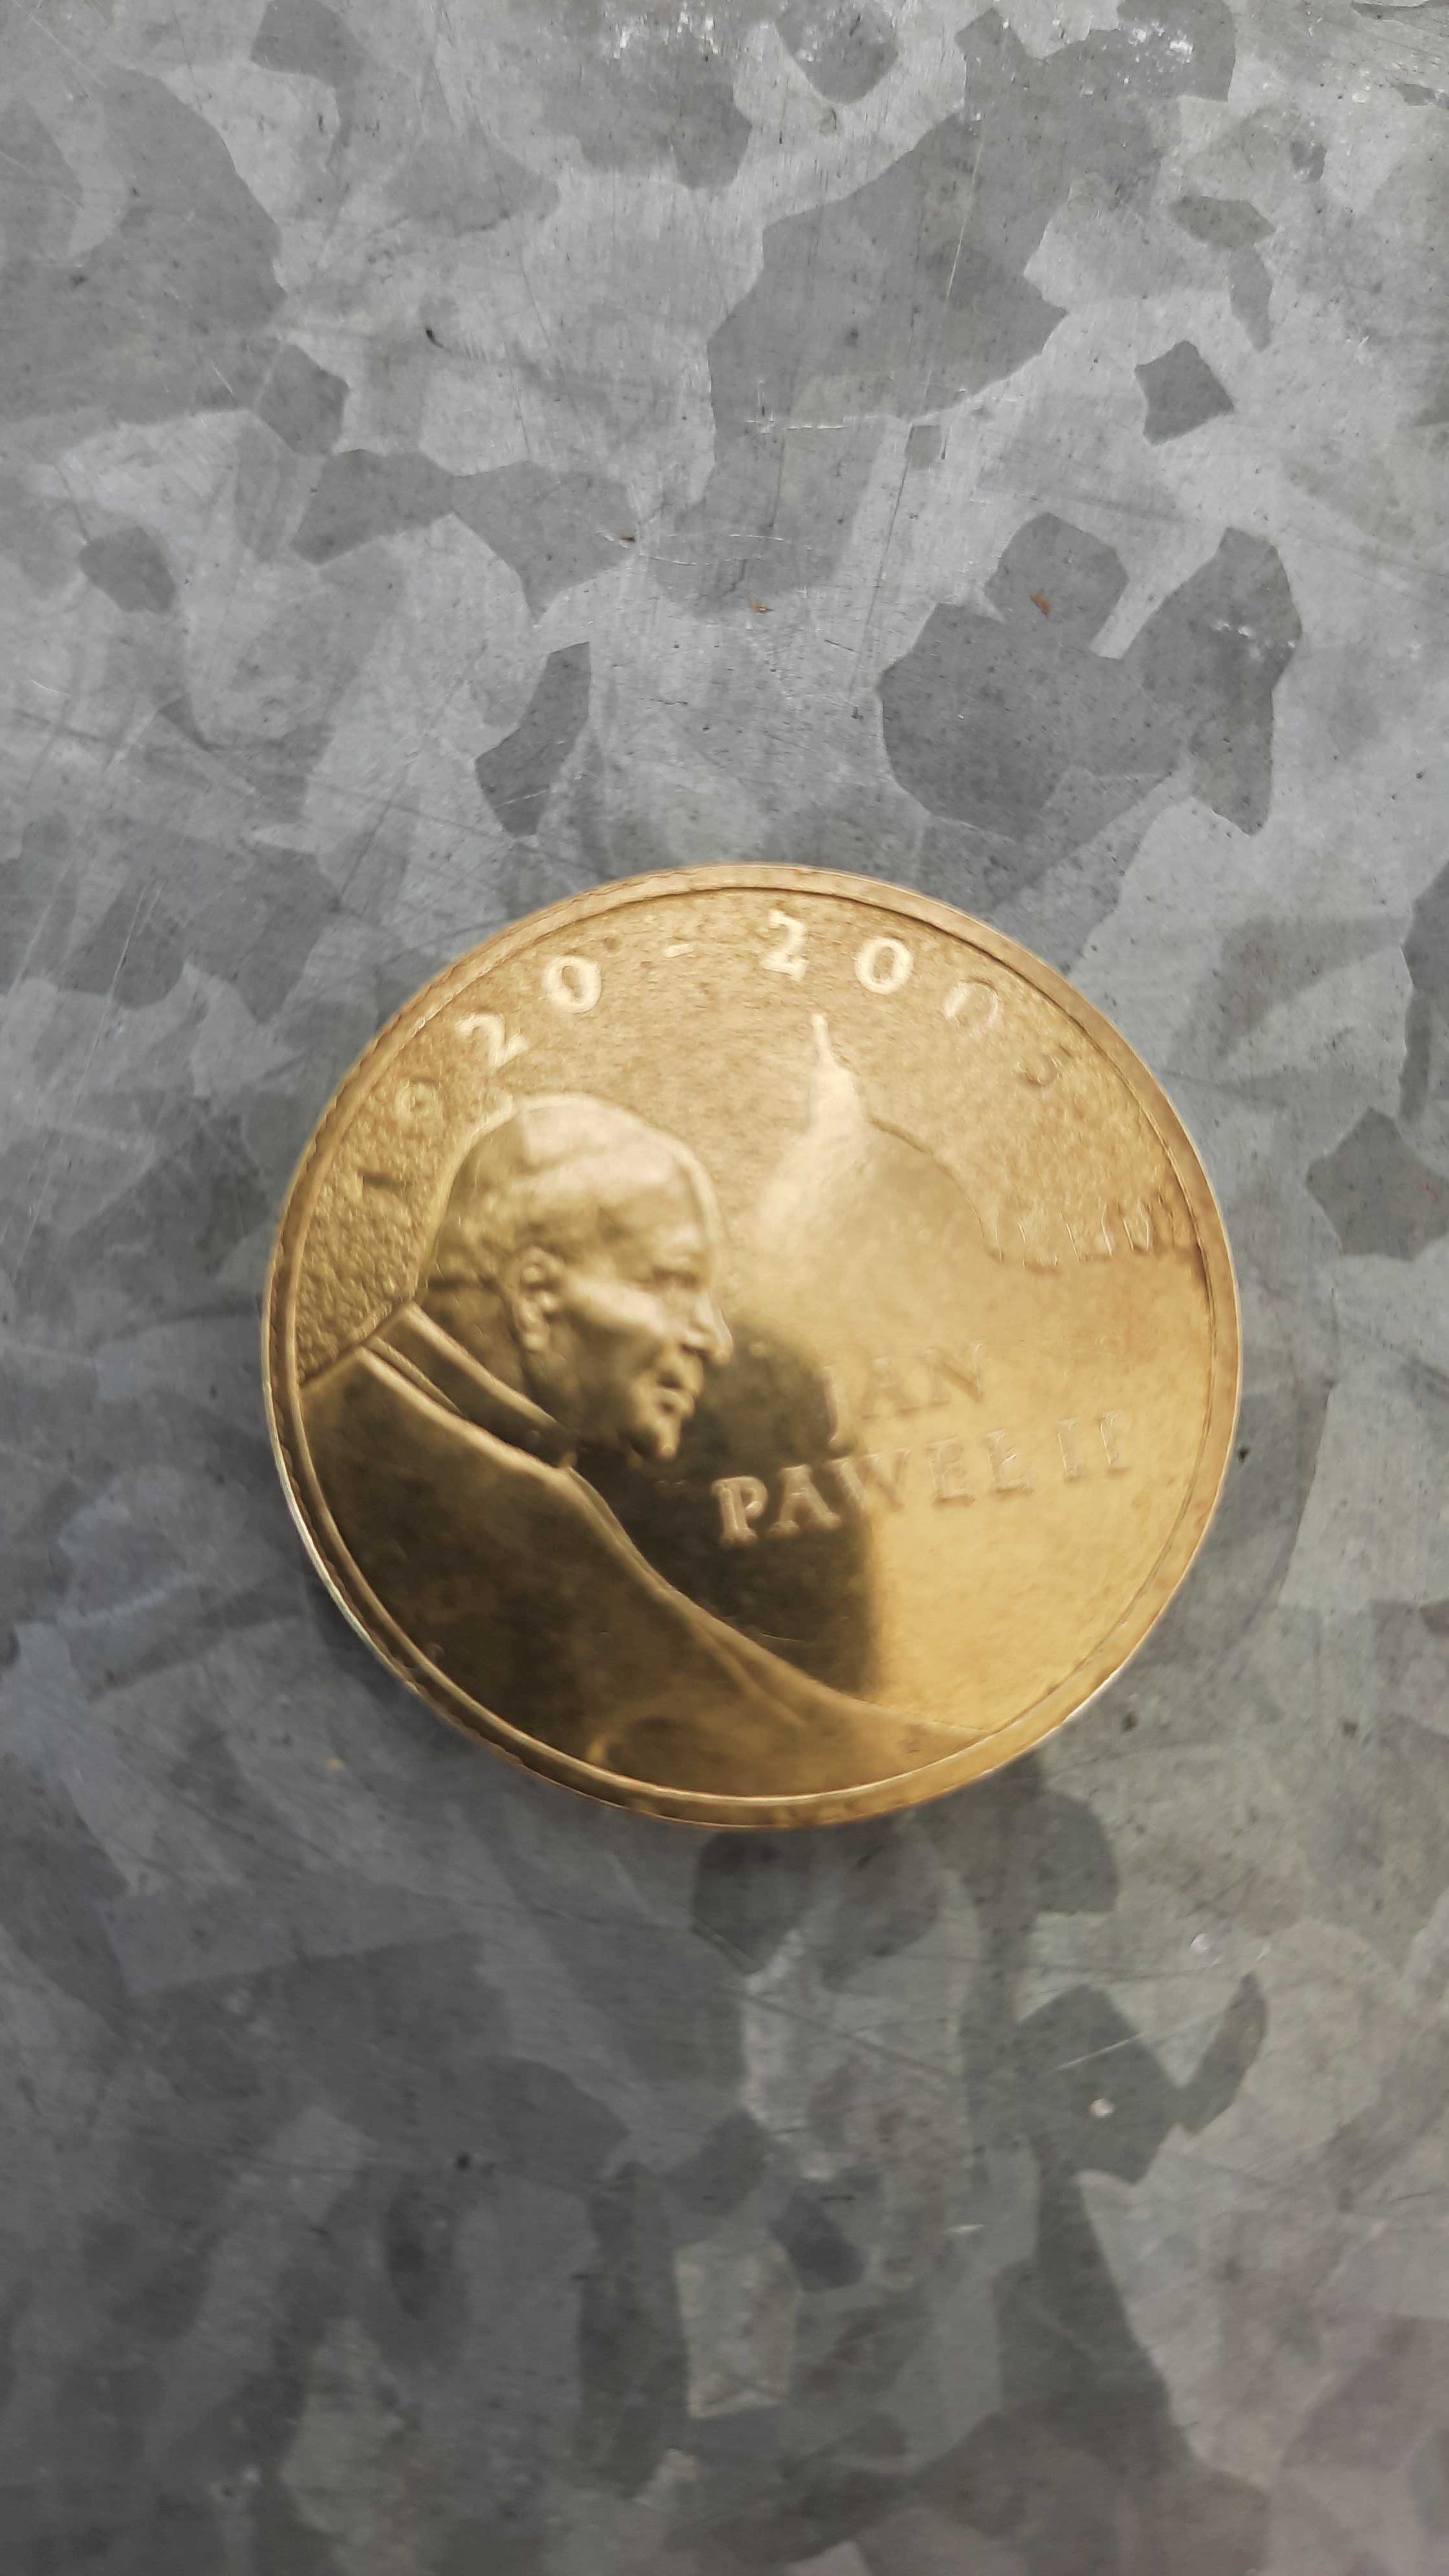 Moneta 2 zl z Janem Pawlem II